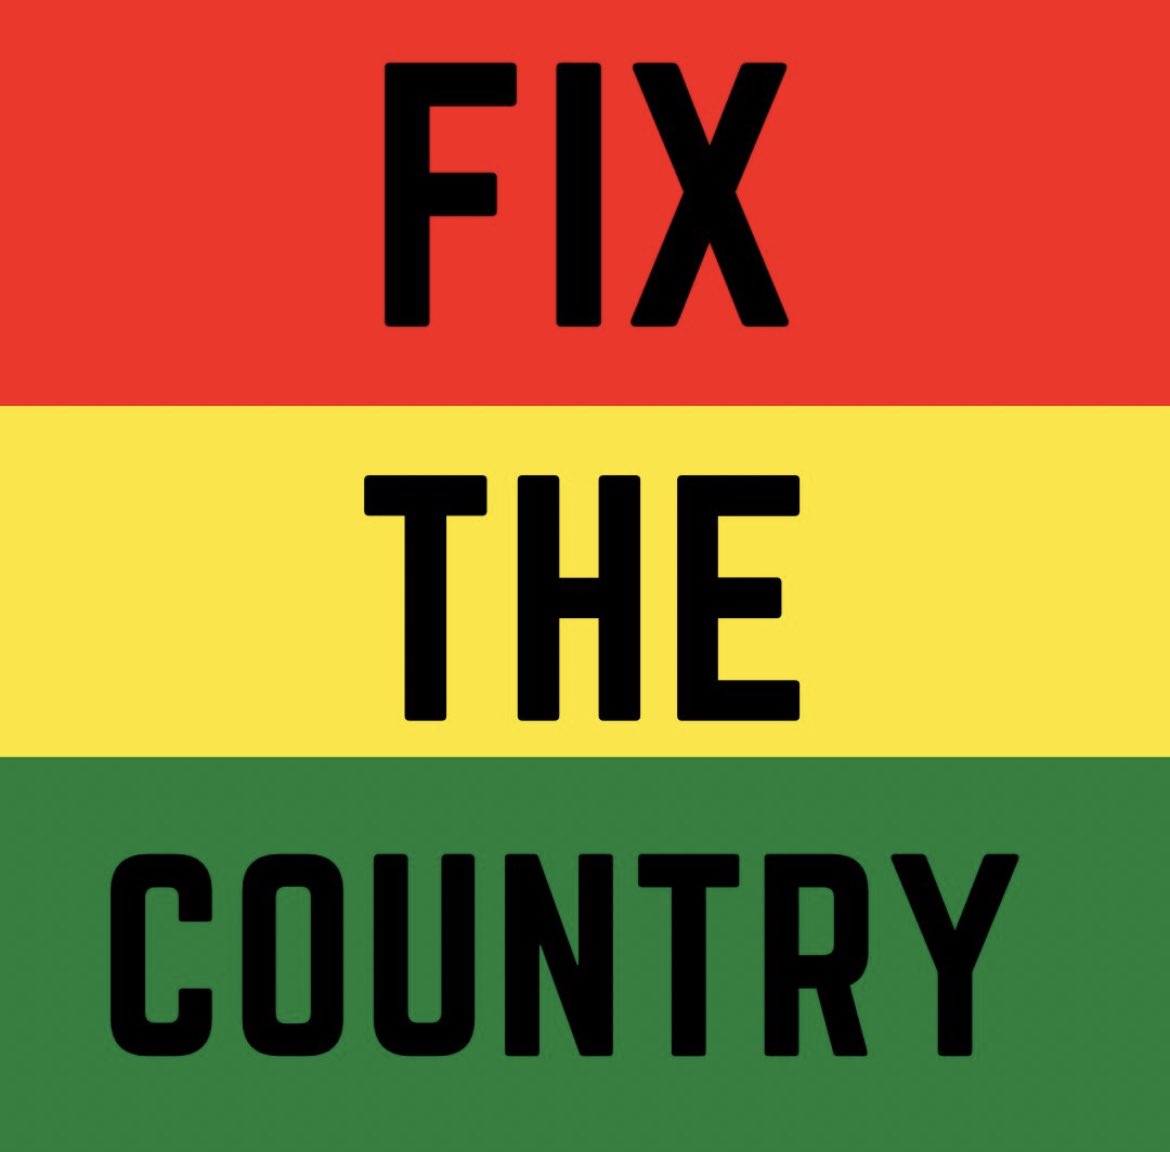 #FixTheCountry